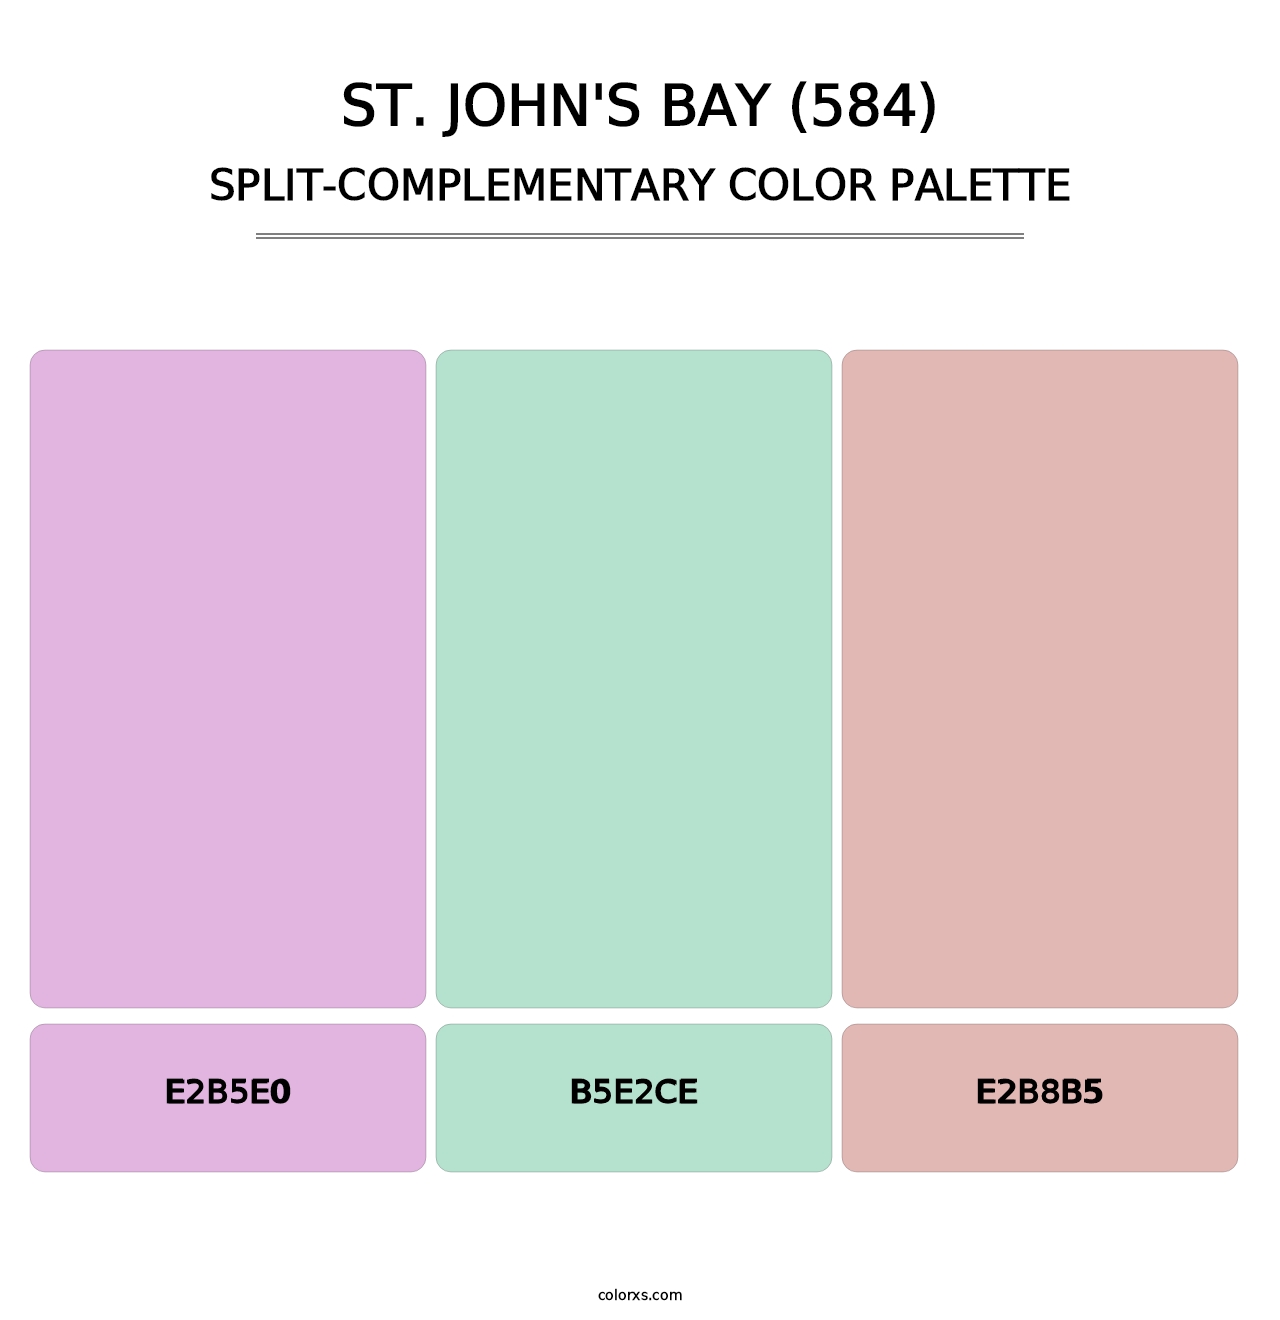 St. John's Bay (584) - Split-Complementary Color Palette